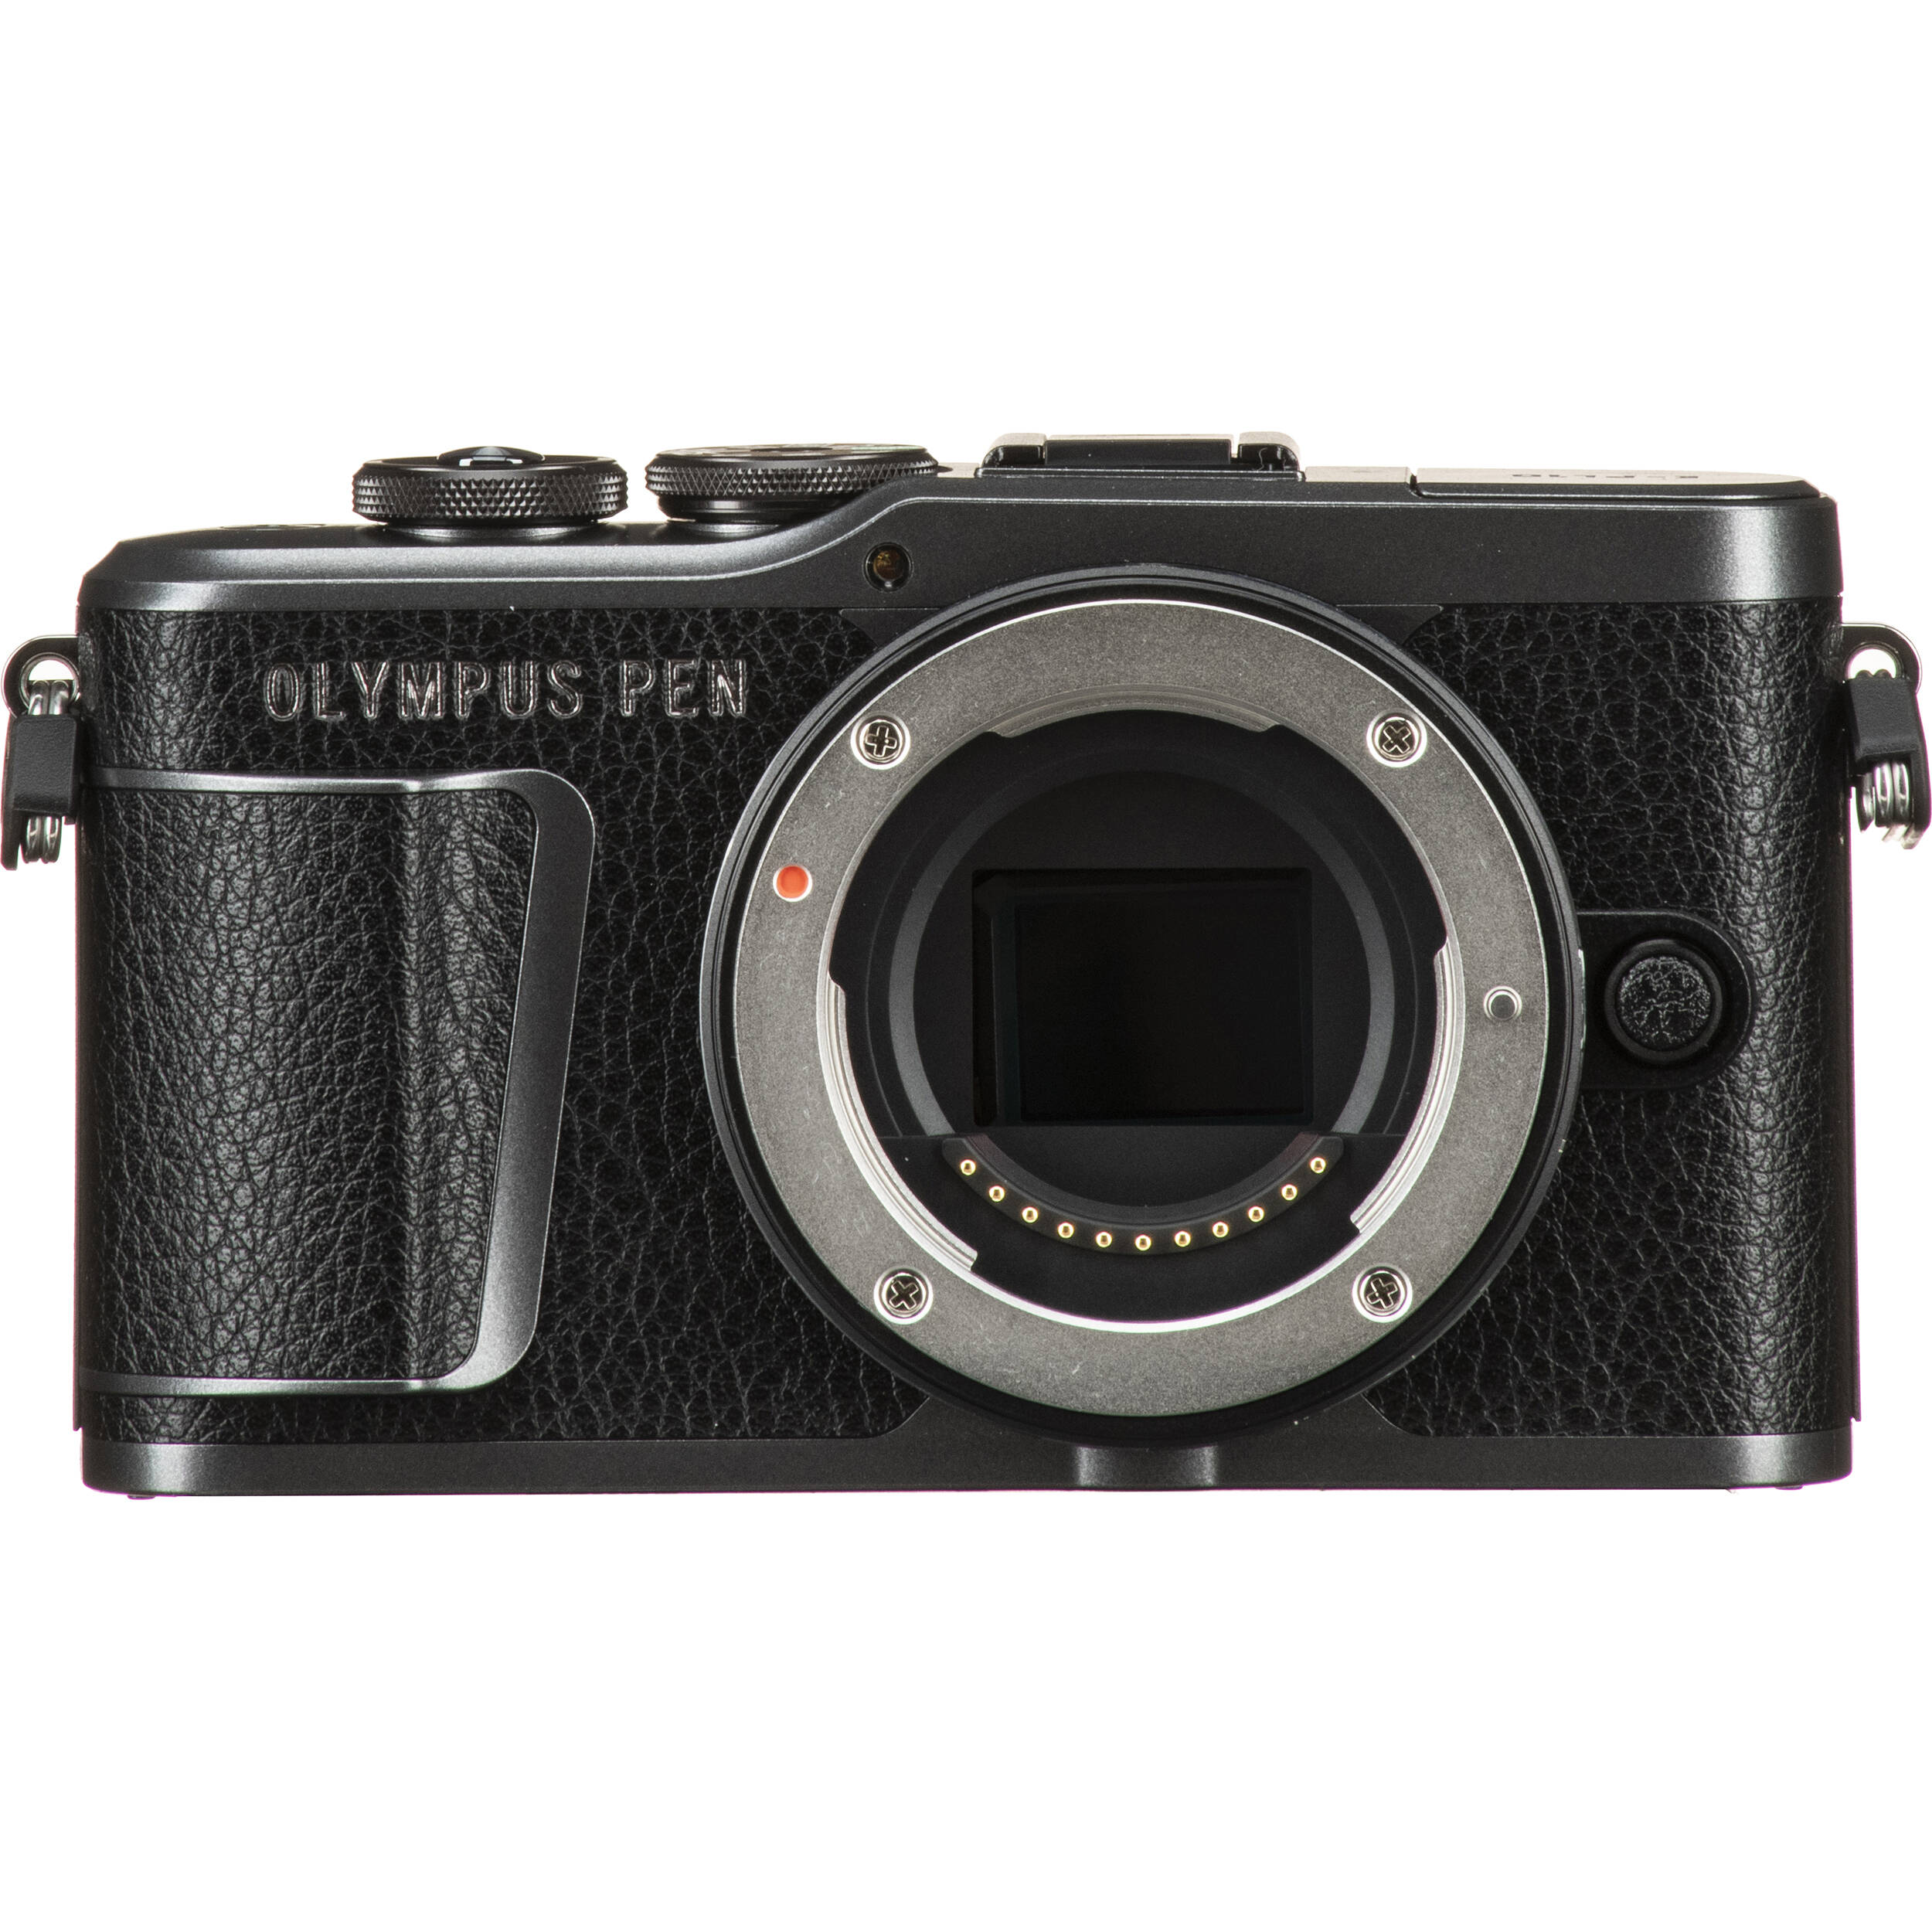 Olympus Pen E Pl10 Mirrorless Digital Camera V5100bu000 B H